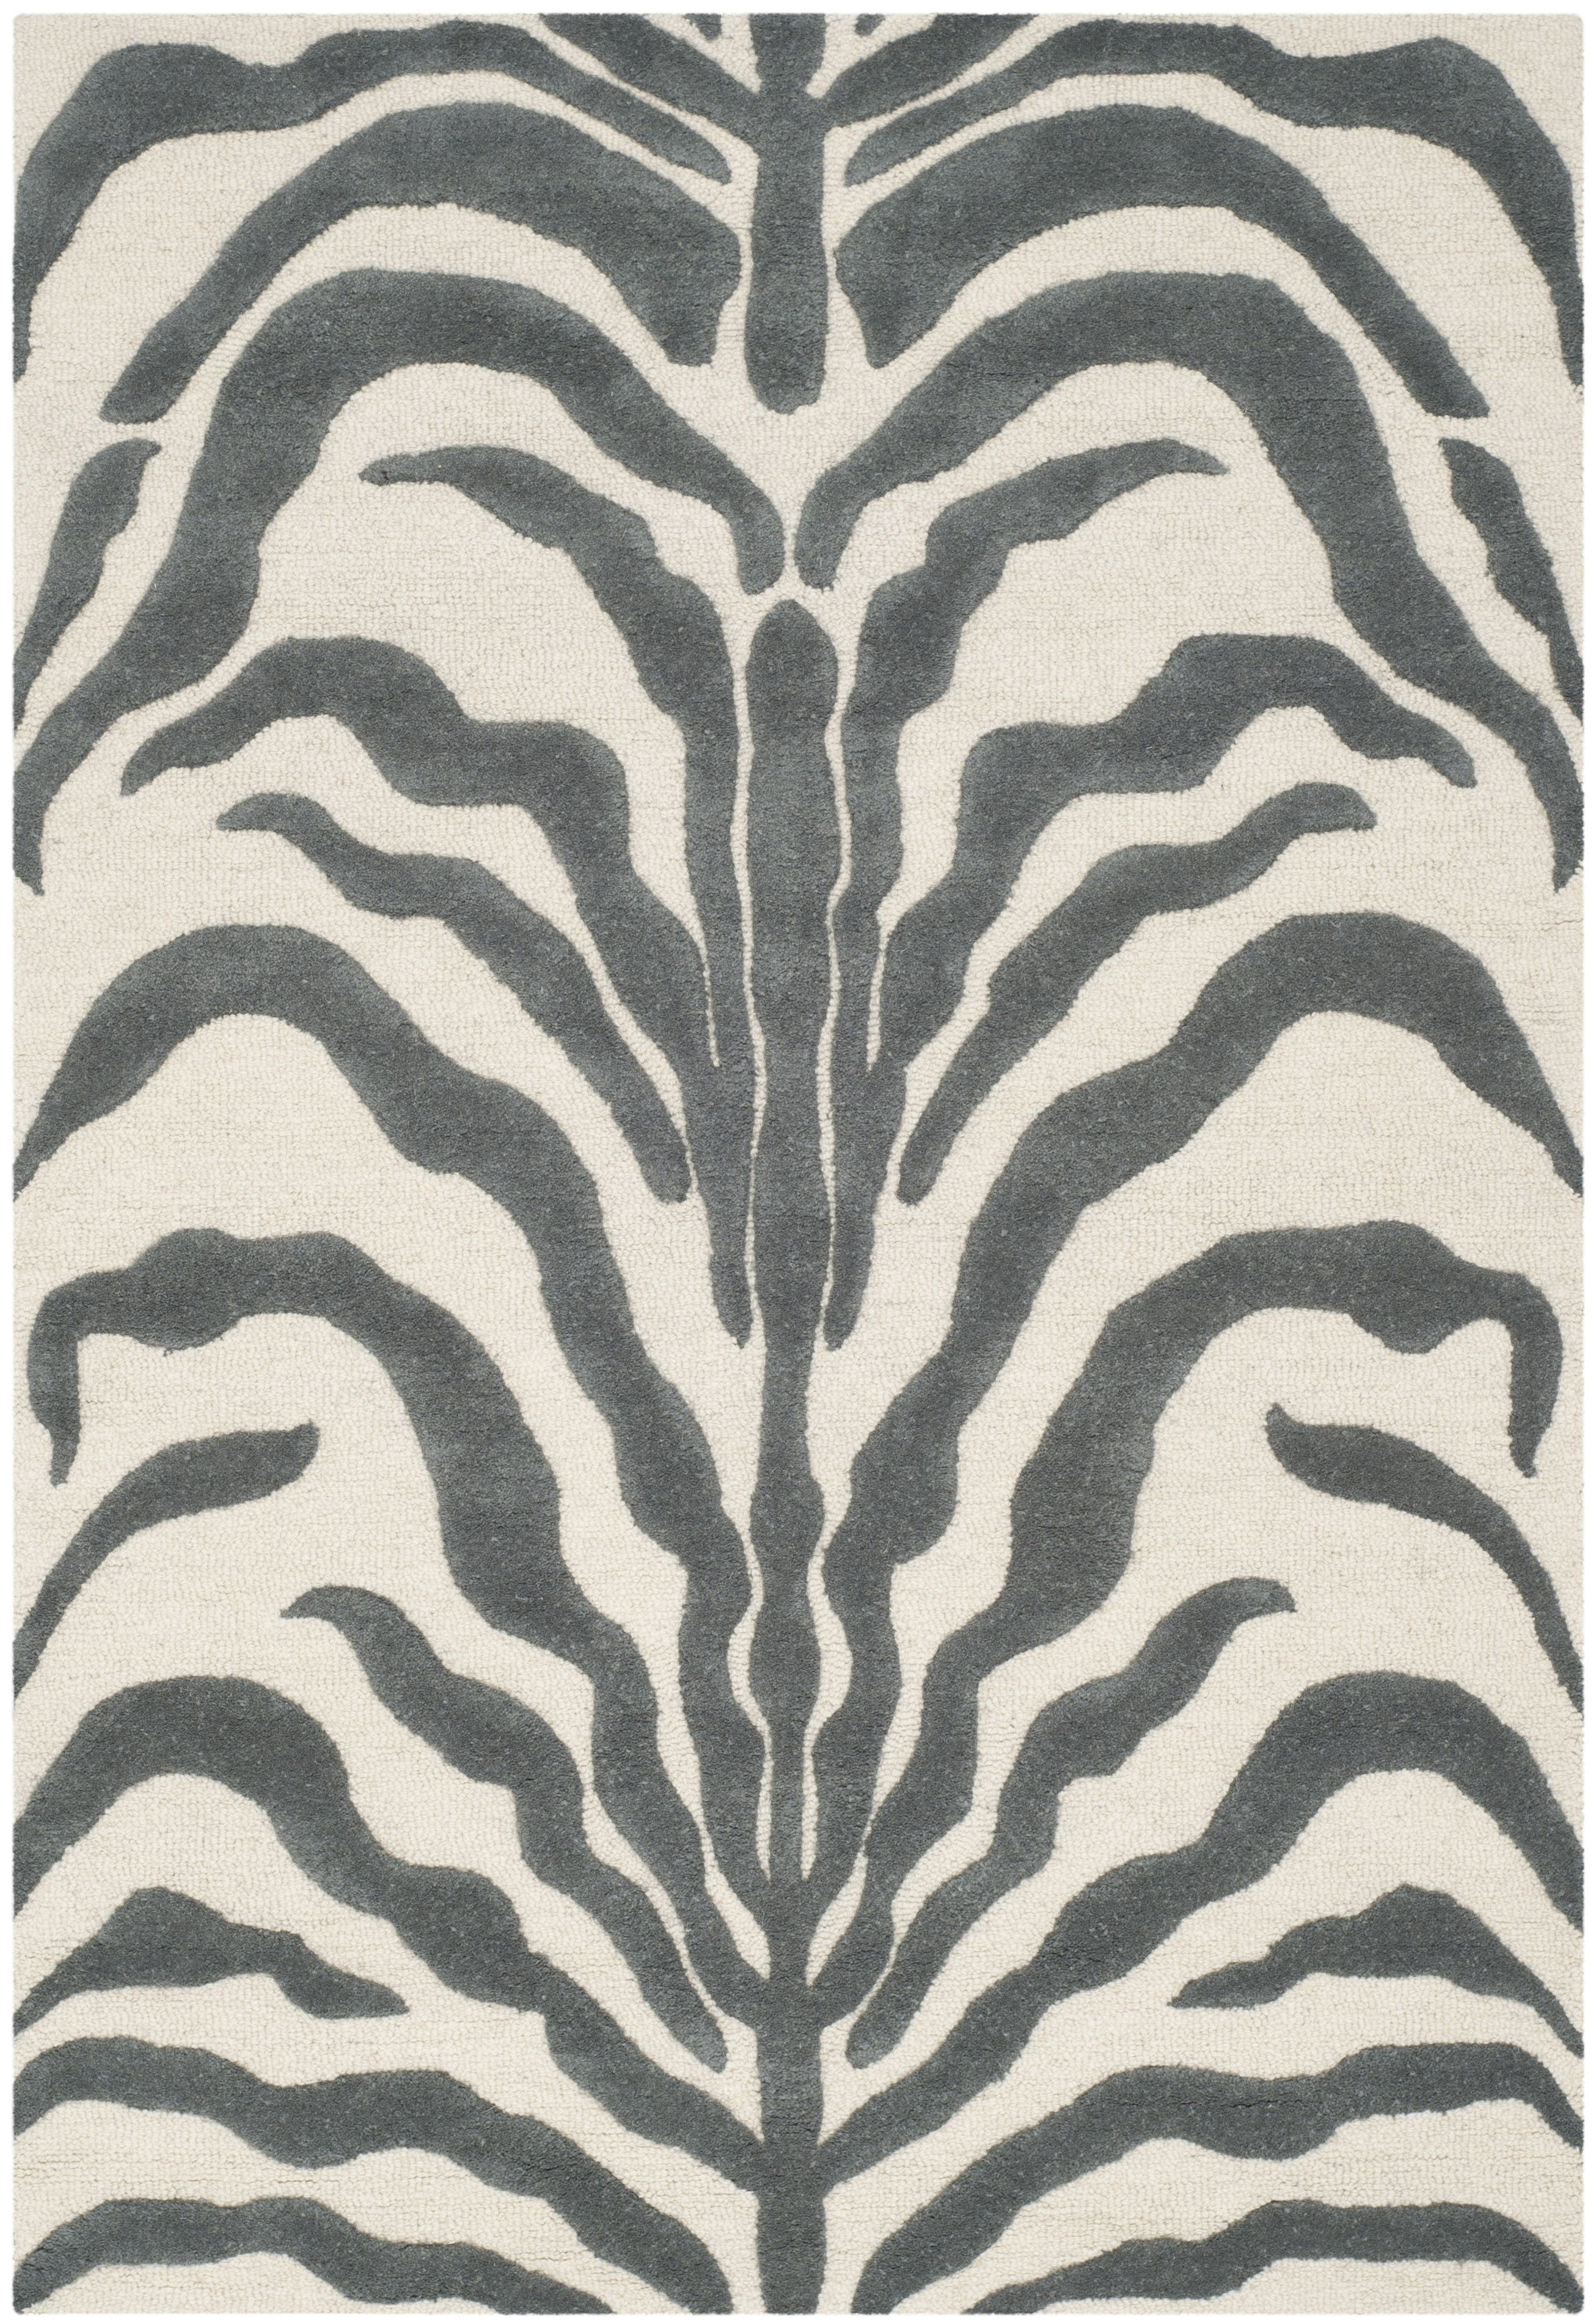 Tapis de salon interieur en ivoire & gris fonce, 122 x 183 cm